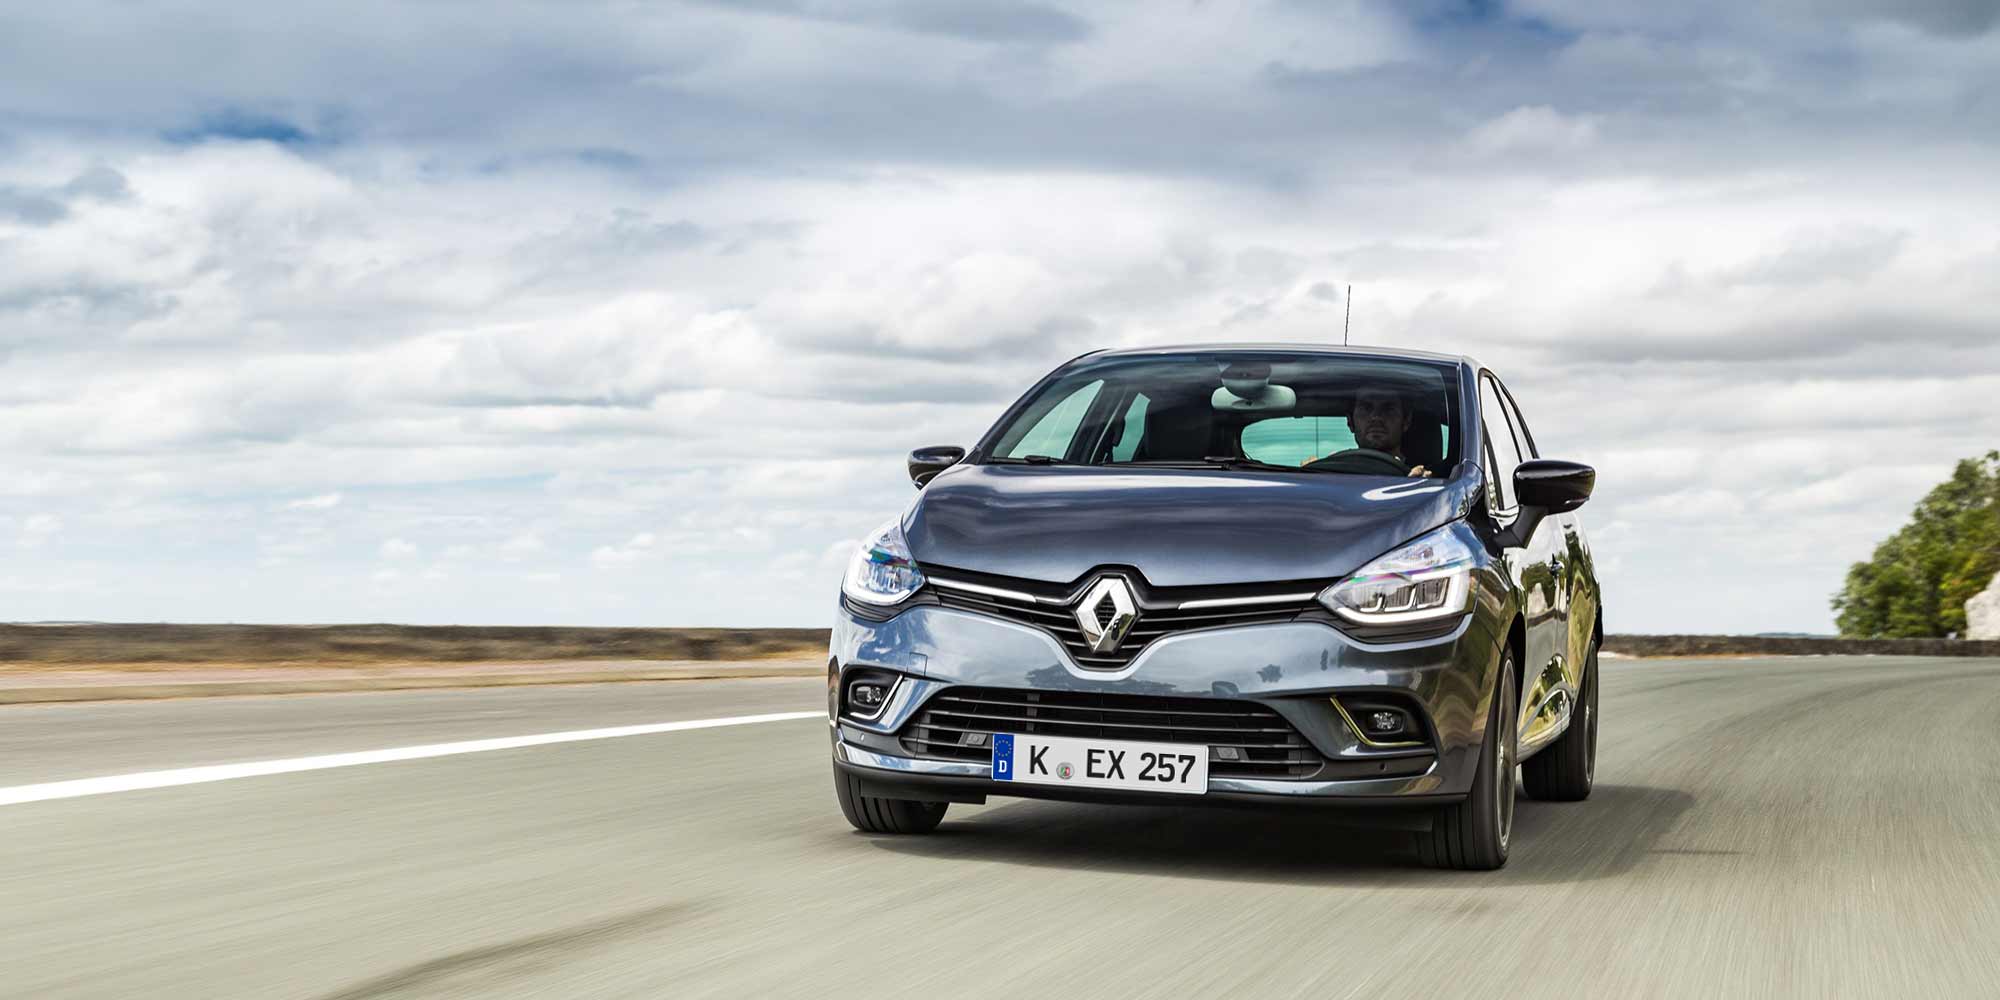 Edles Design: Renault Clio im neuen Gewand - Renault Welt